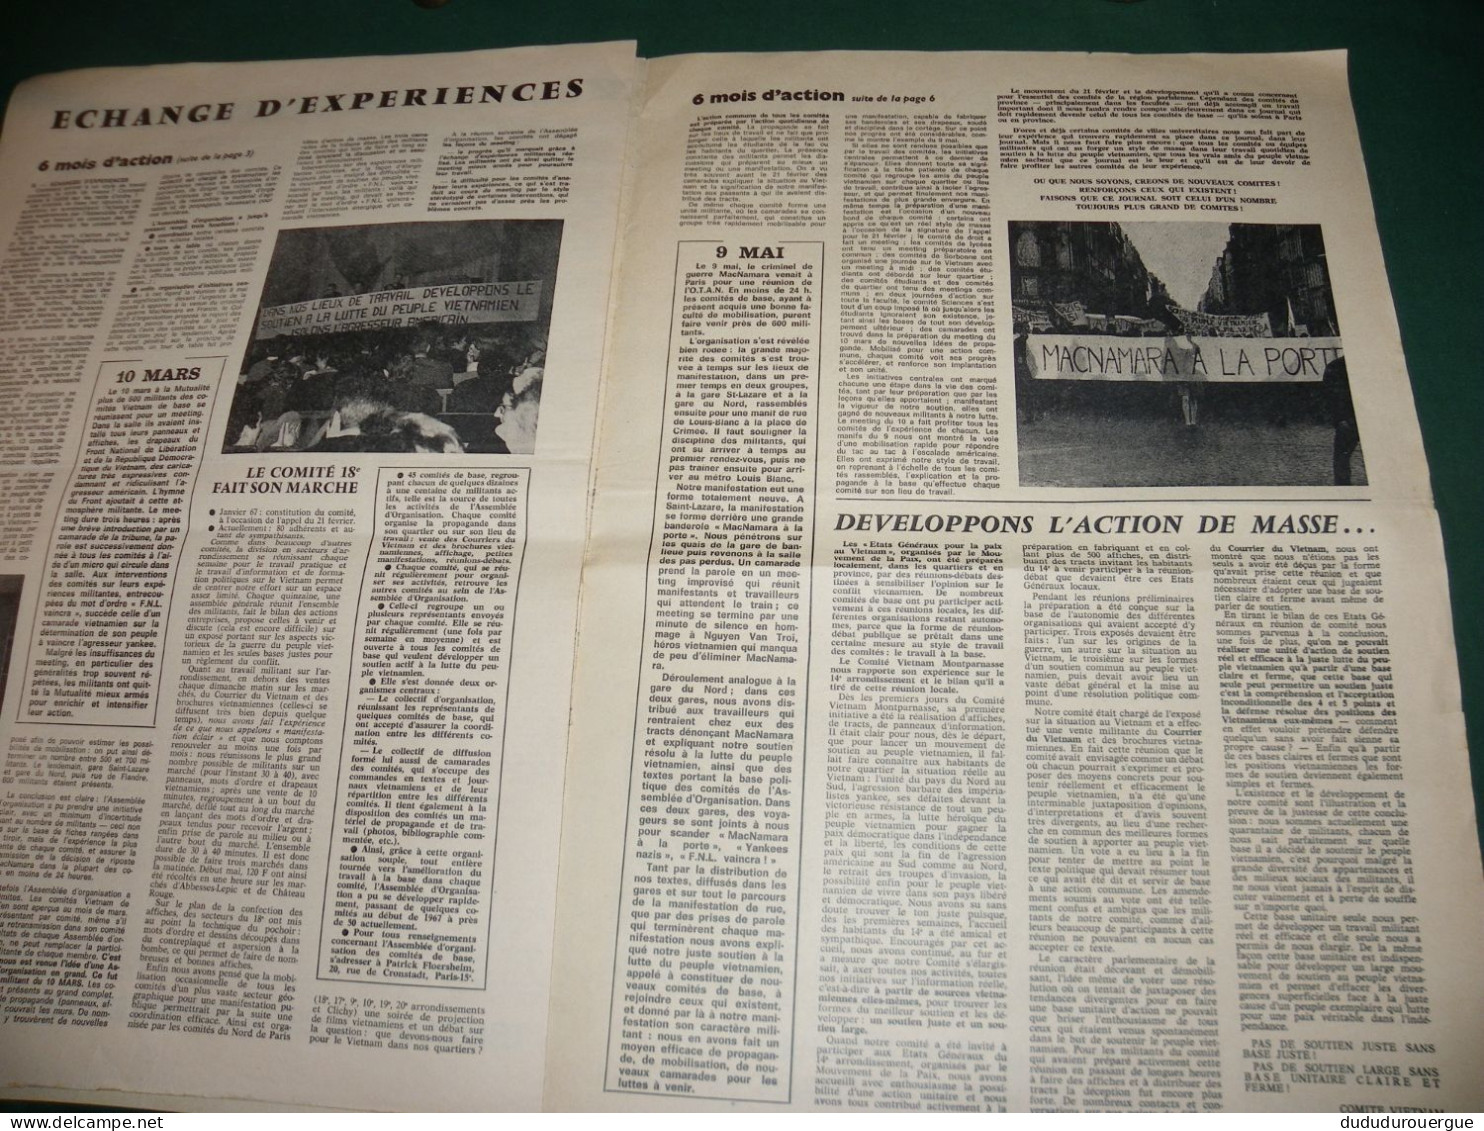 GUERRE DU VIETNAM : " VICTOIRE POUR LE VIETNAM " JOURNAL DES COMITES VIETNAM DE BASE , LE N ° 1 - 1950 - Today